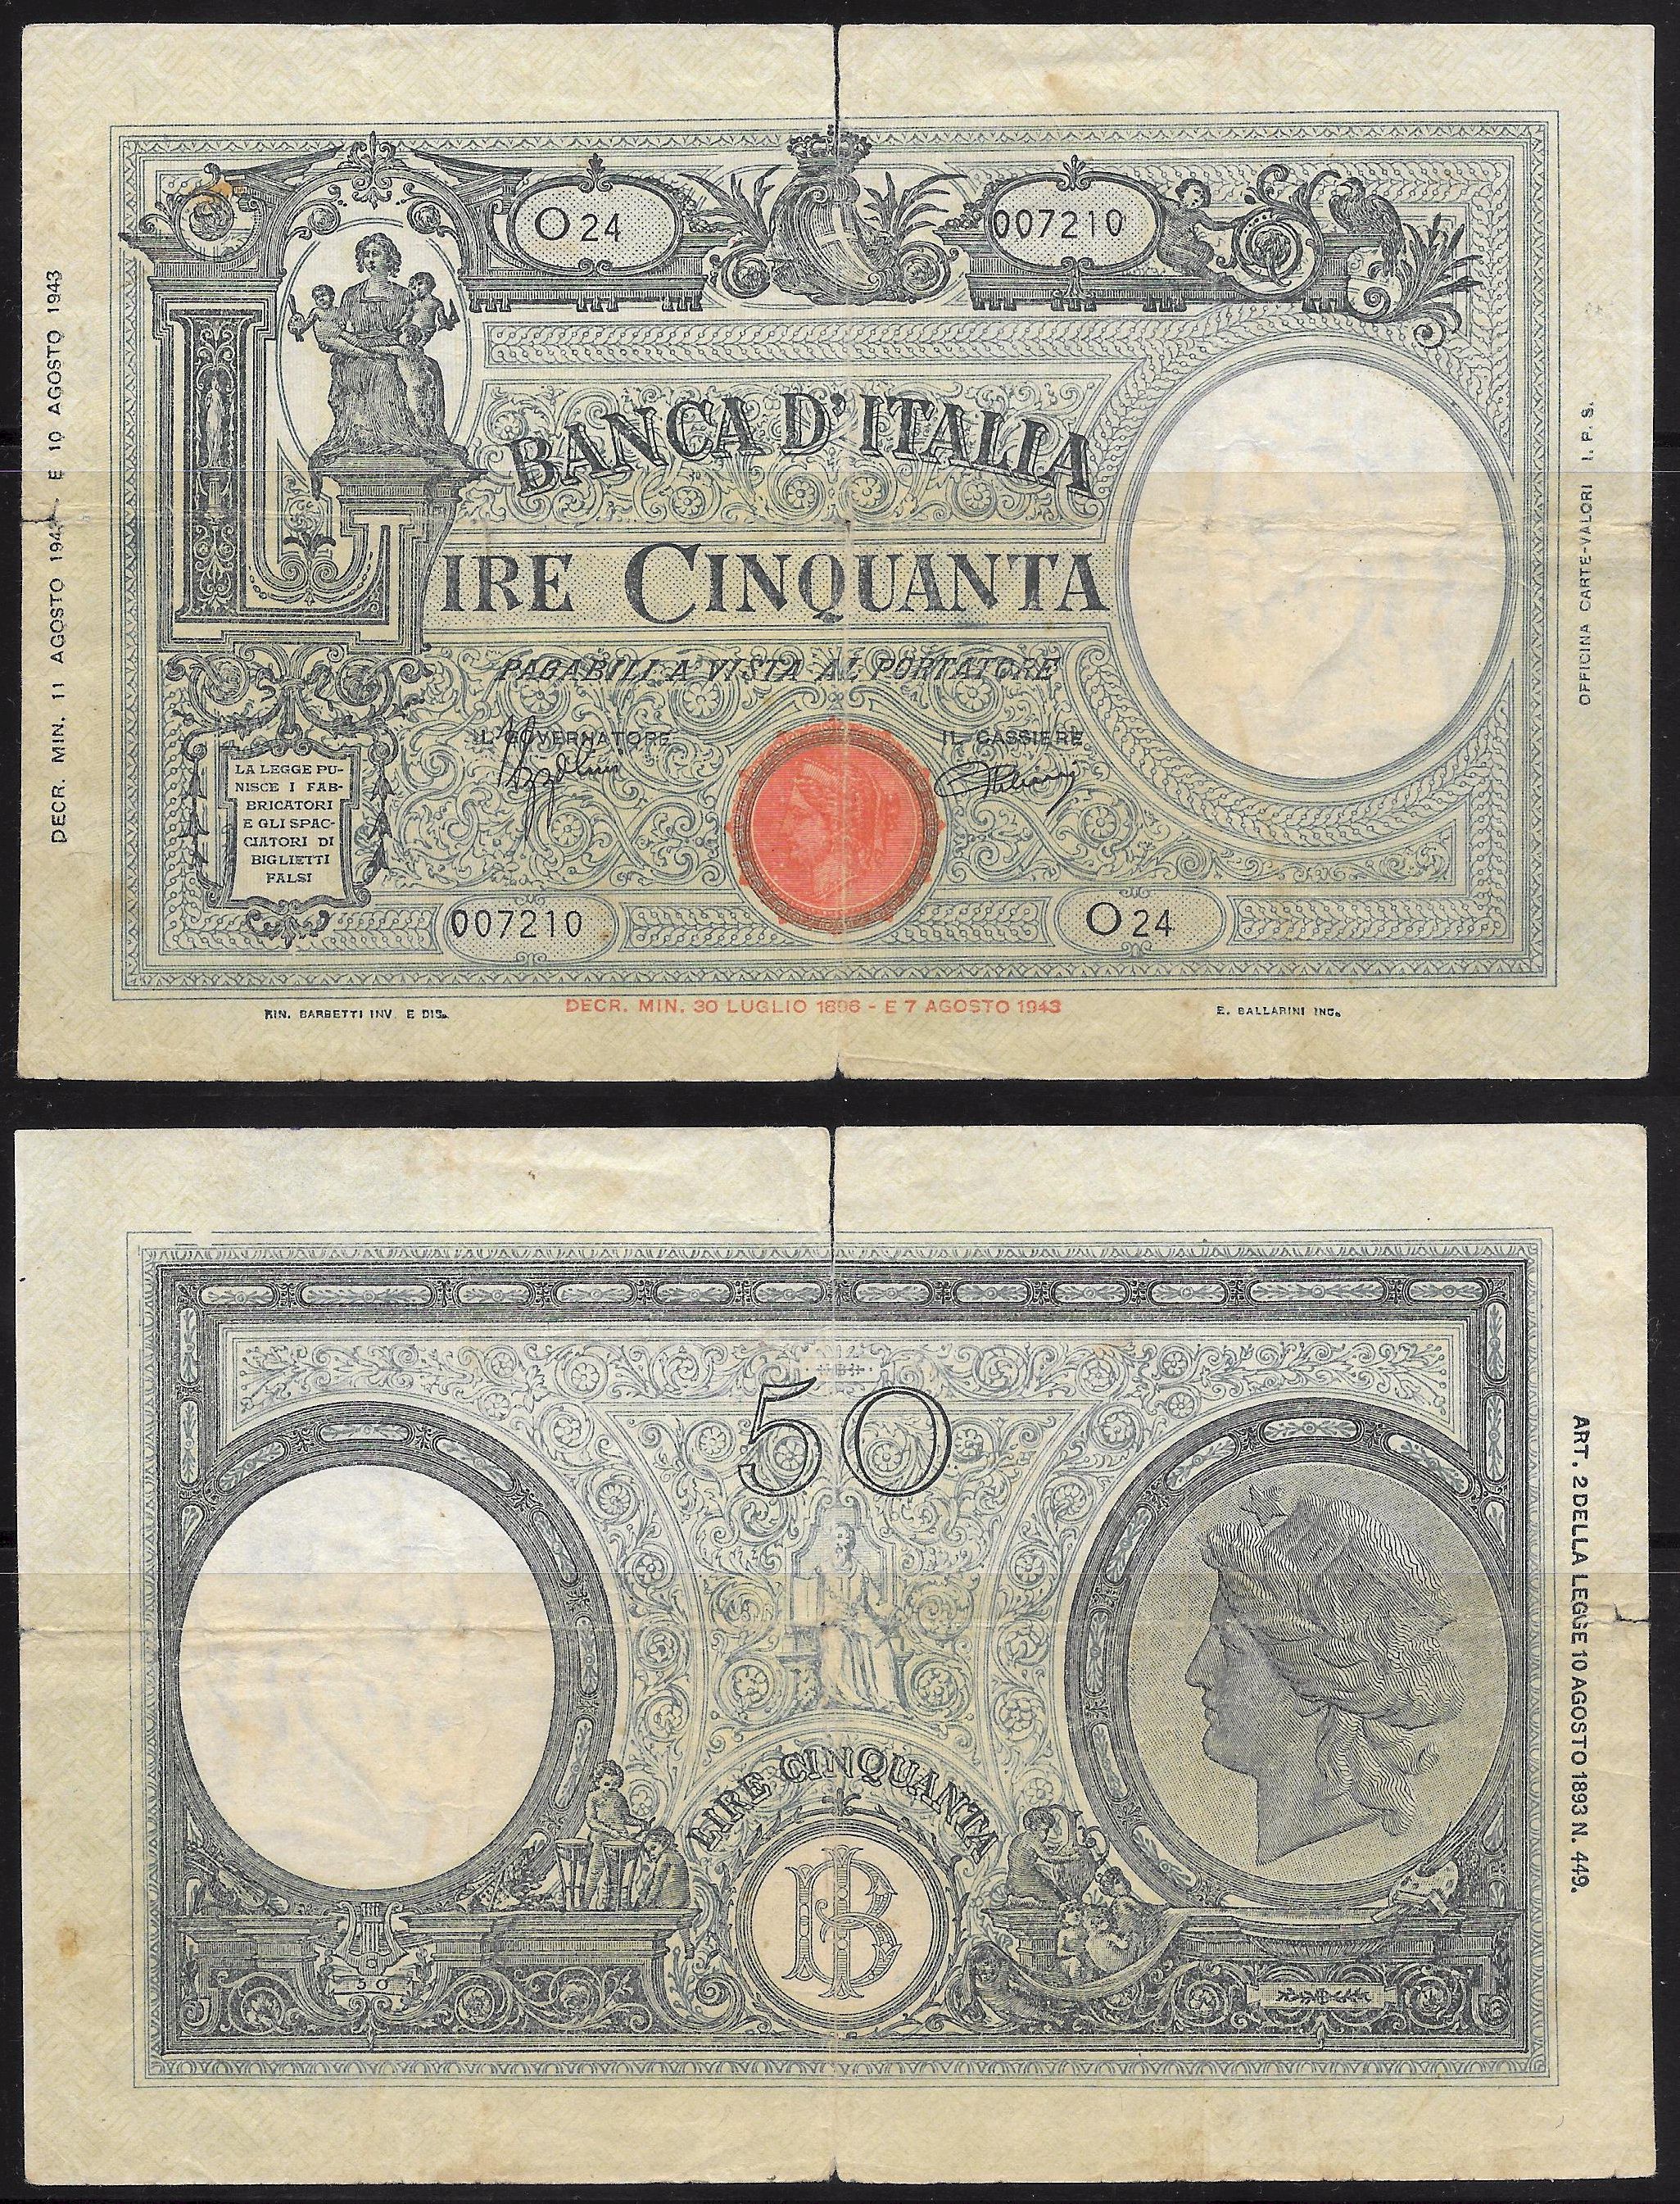 Vittorio Emanuele III - cinquanta lire -dec. min. 11-08-1943